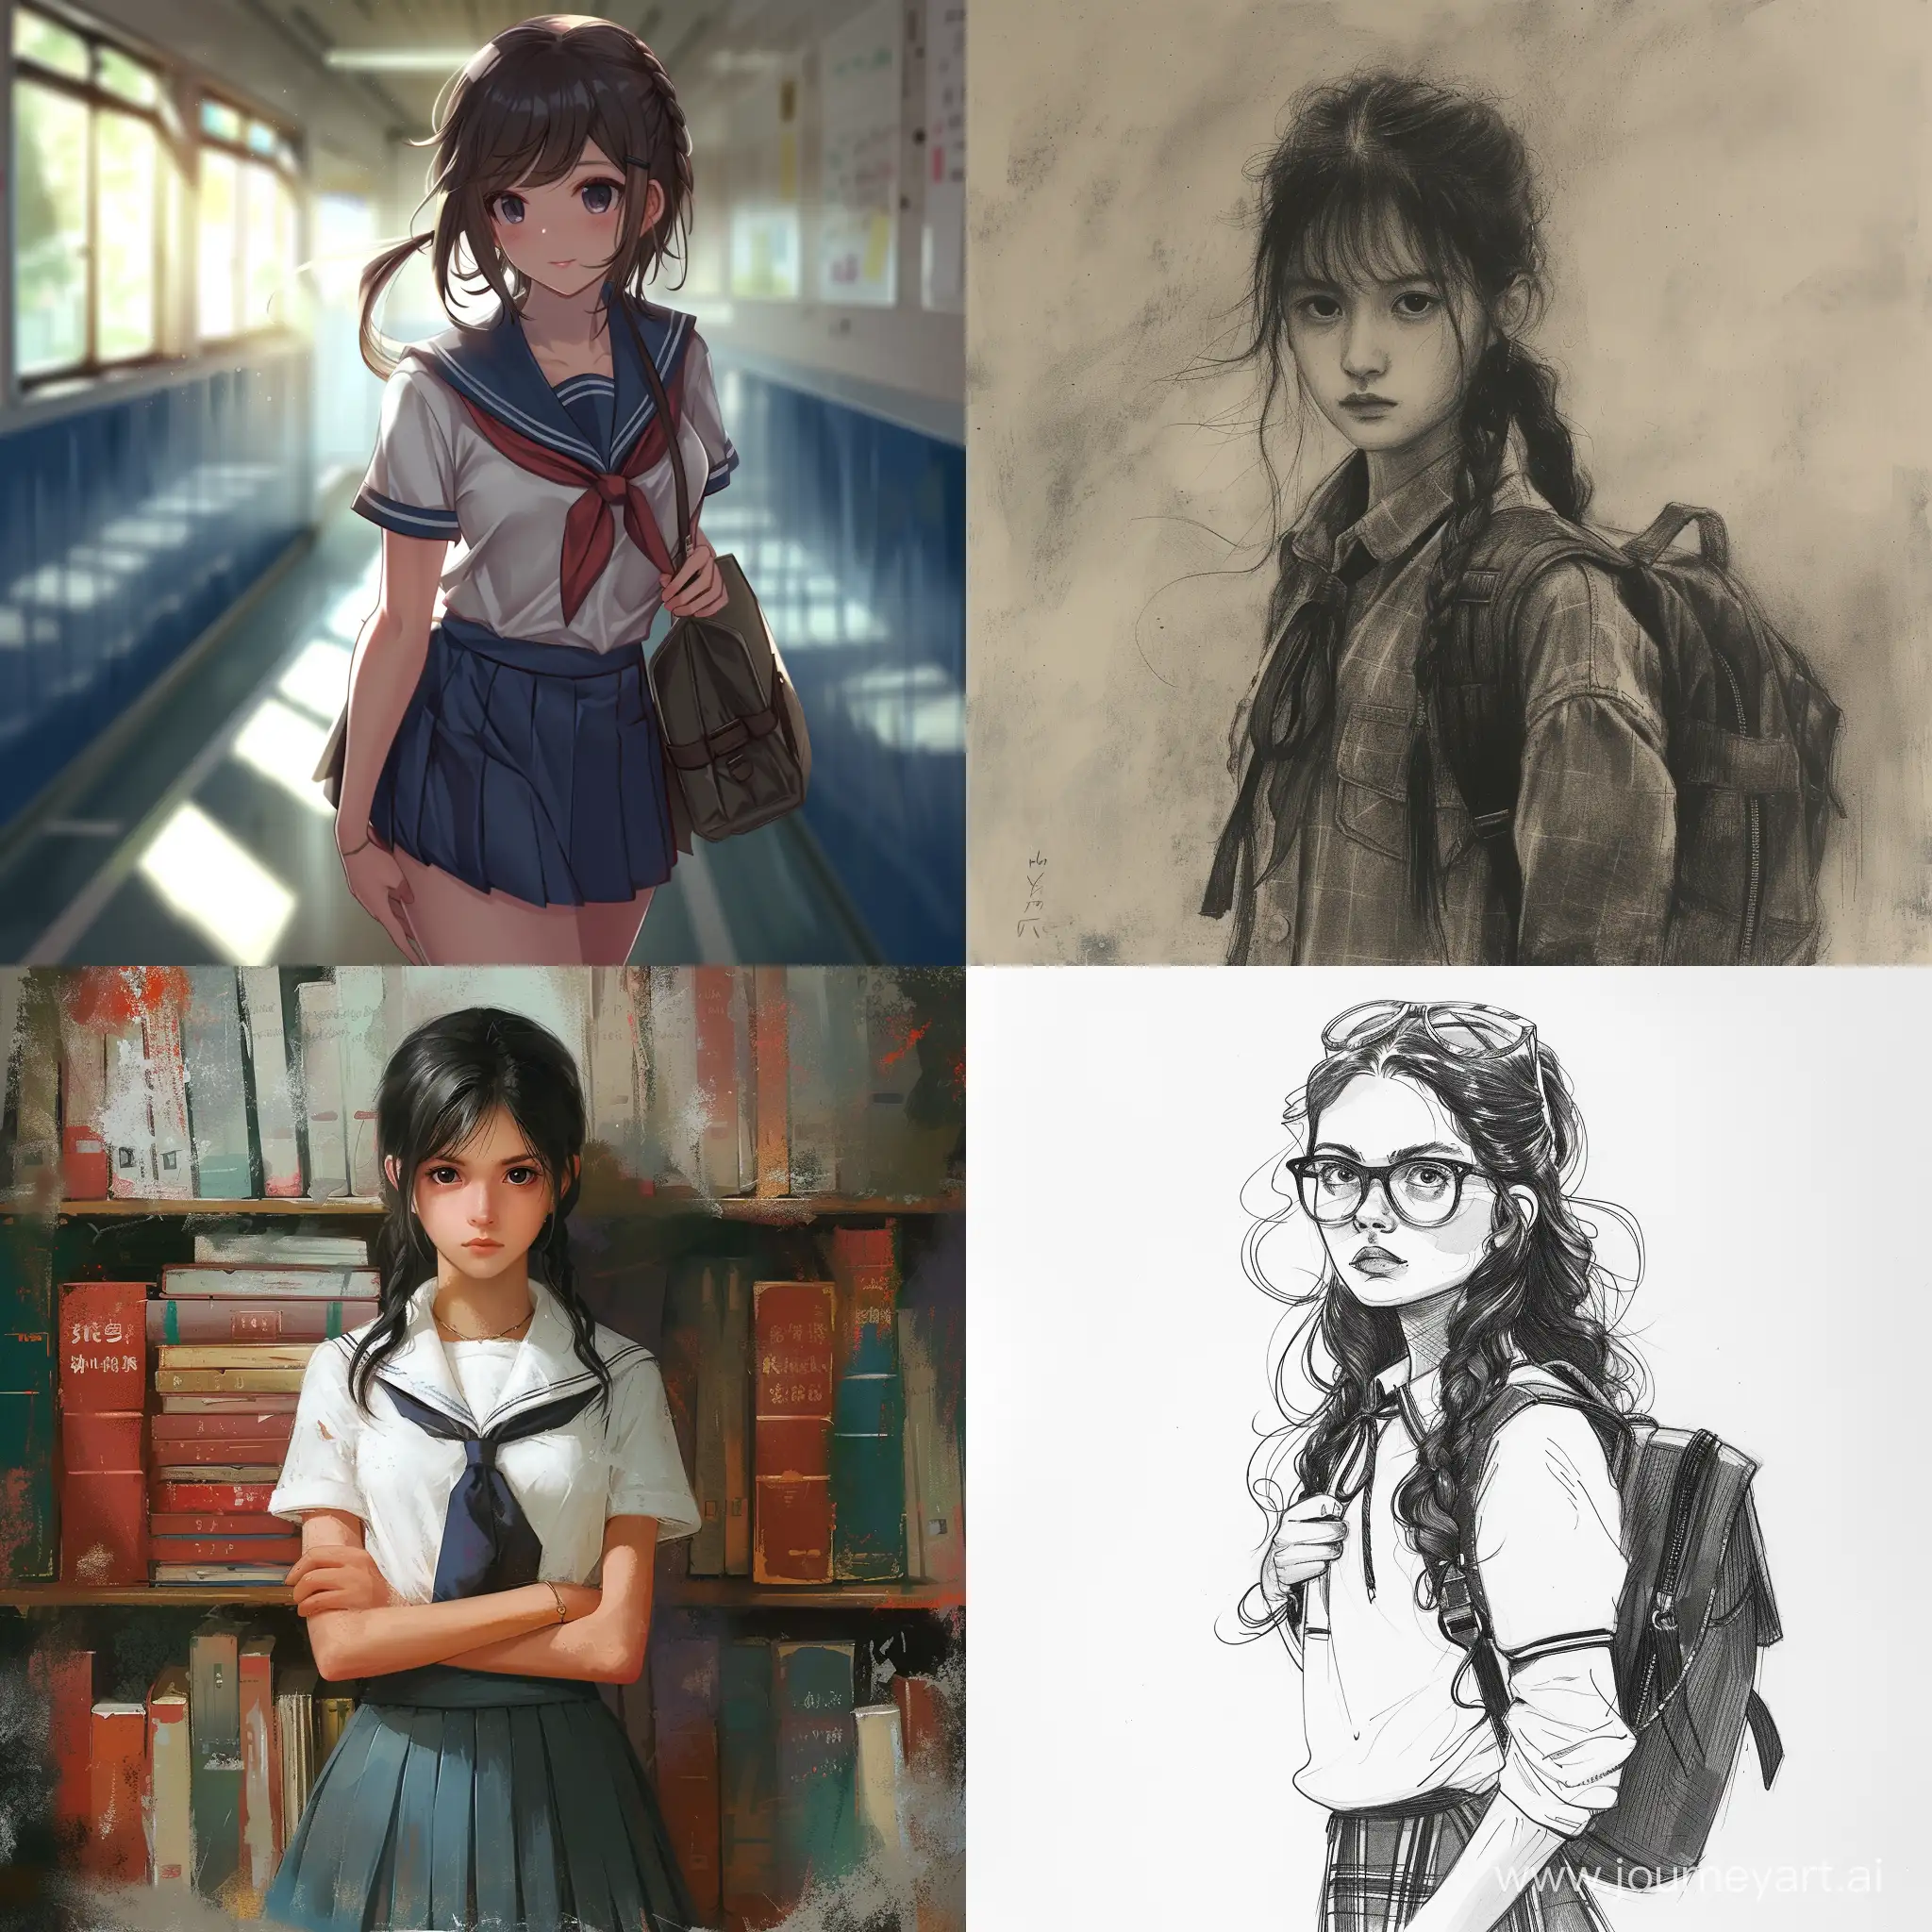 Schoolgirl-Drawing-in-Classroom